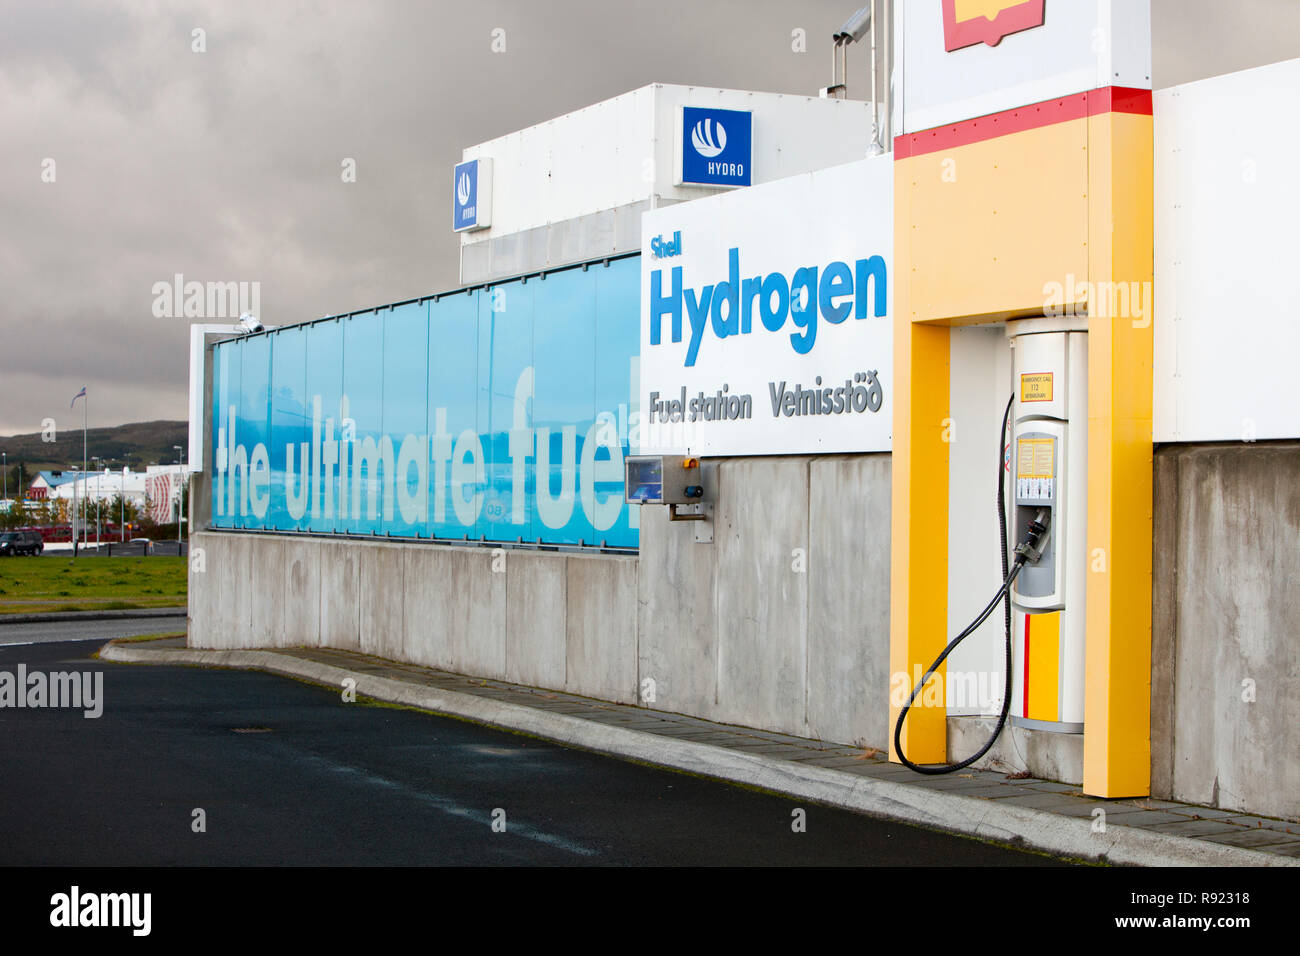 Un idrogeno stazione di riempimento nella periferia di Reykavik, Islanda. La stazione di riempimento è di proprietà di Shell ed è parte di un progetto per aiutare l'Islanda si spostano da lontano dalle importazioni di petrolio, per alimentare i propri veicoli con idrogeno. L'Islanda è impegnata al passaggio ad una economia dell'idrogeno entro il 2050. L'Islanda è idealmente adatto per una economia dell'idrogeno come ha abbondante approvvigionamento di elettricità generata da fonti rinnovabili, che può essere utilizzato per dividere l'acqua, per creare idrogeno. Foto Stock